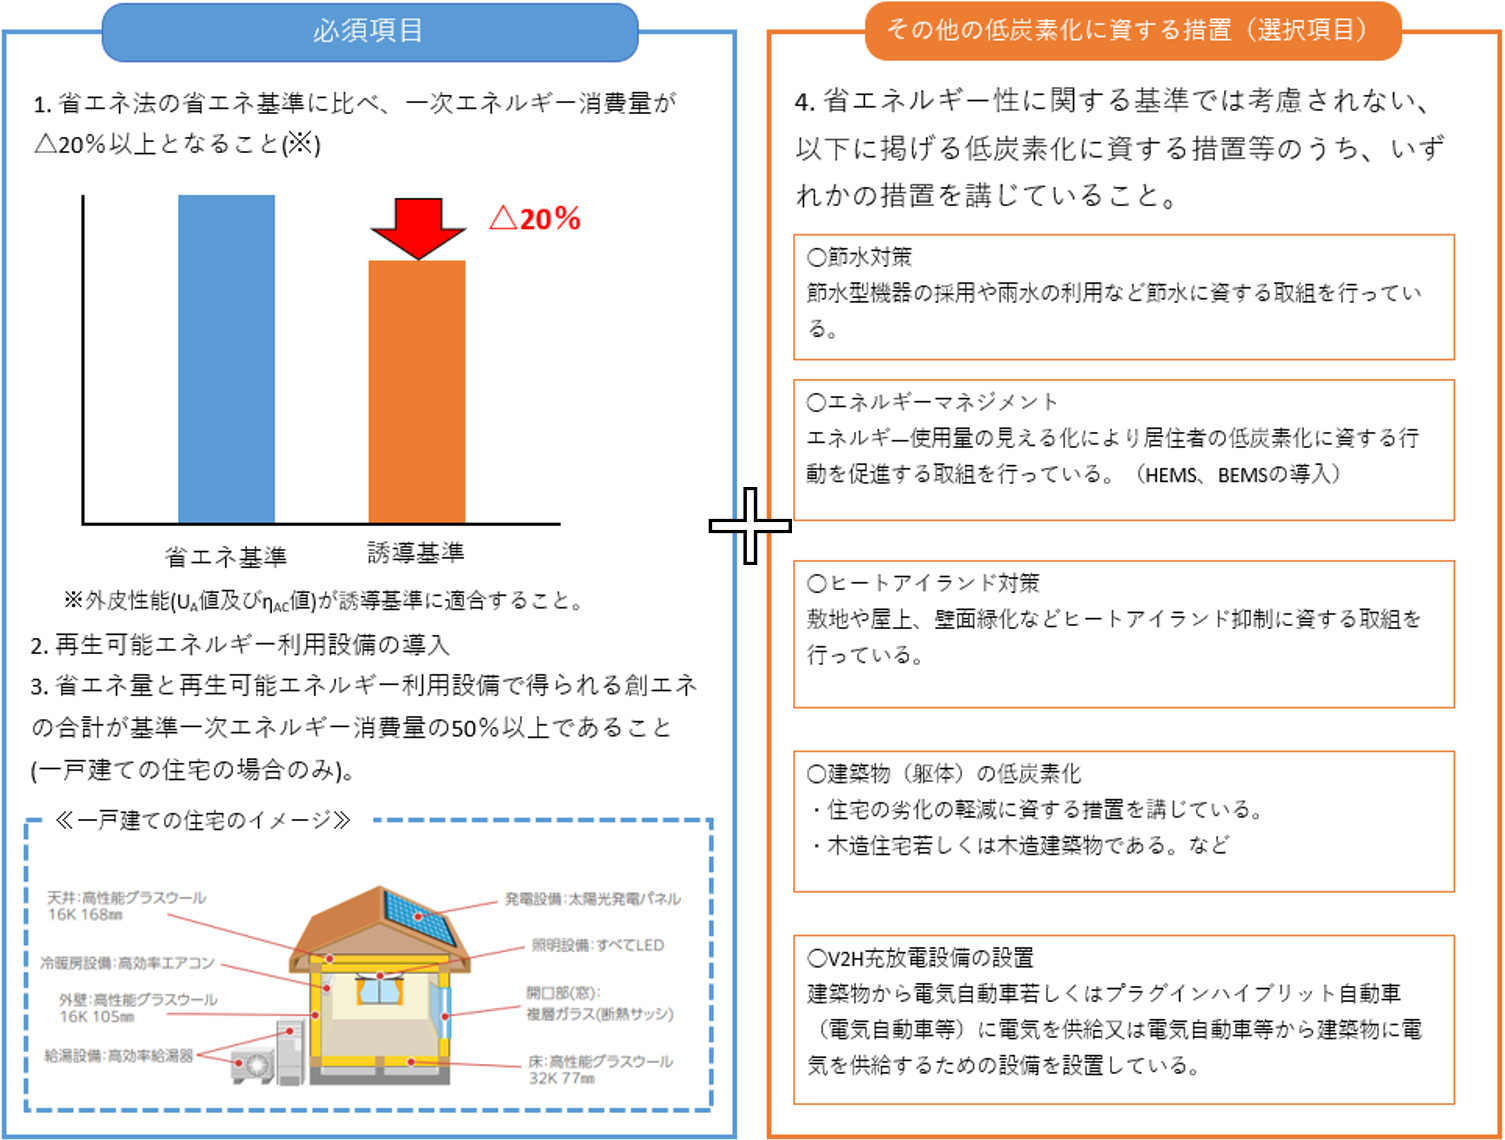 「住宅性能表示制度において評価する性能」のイメージ